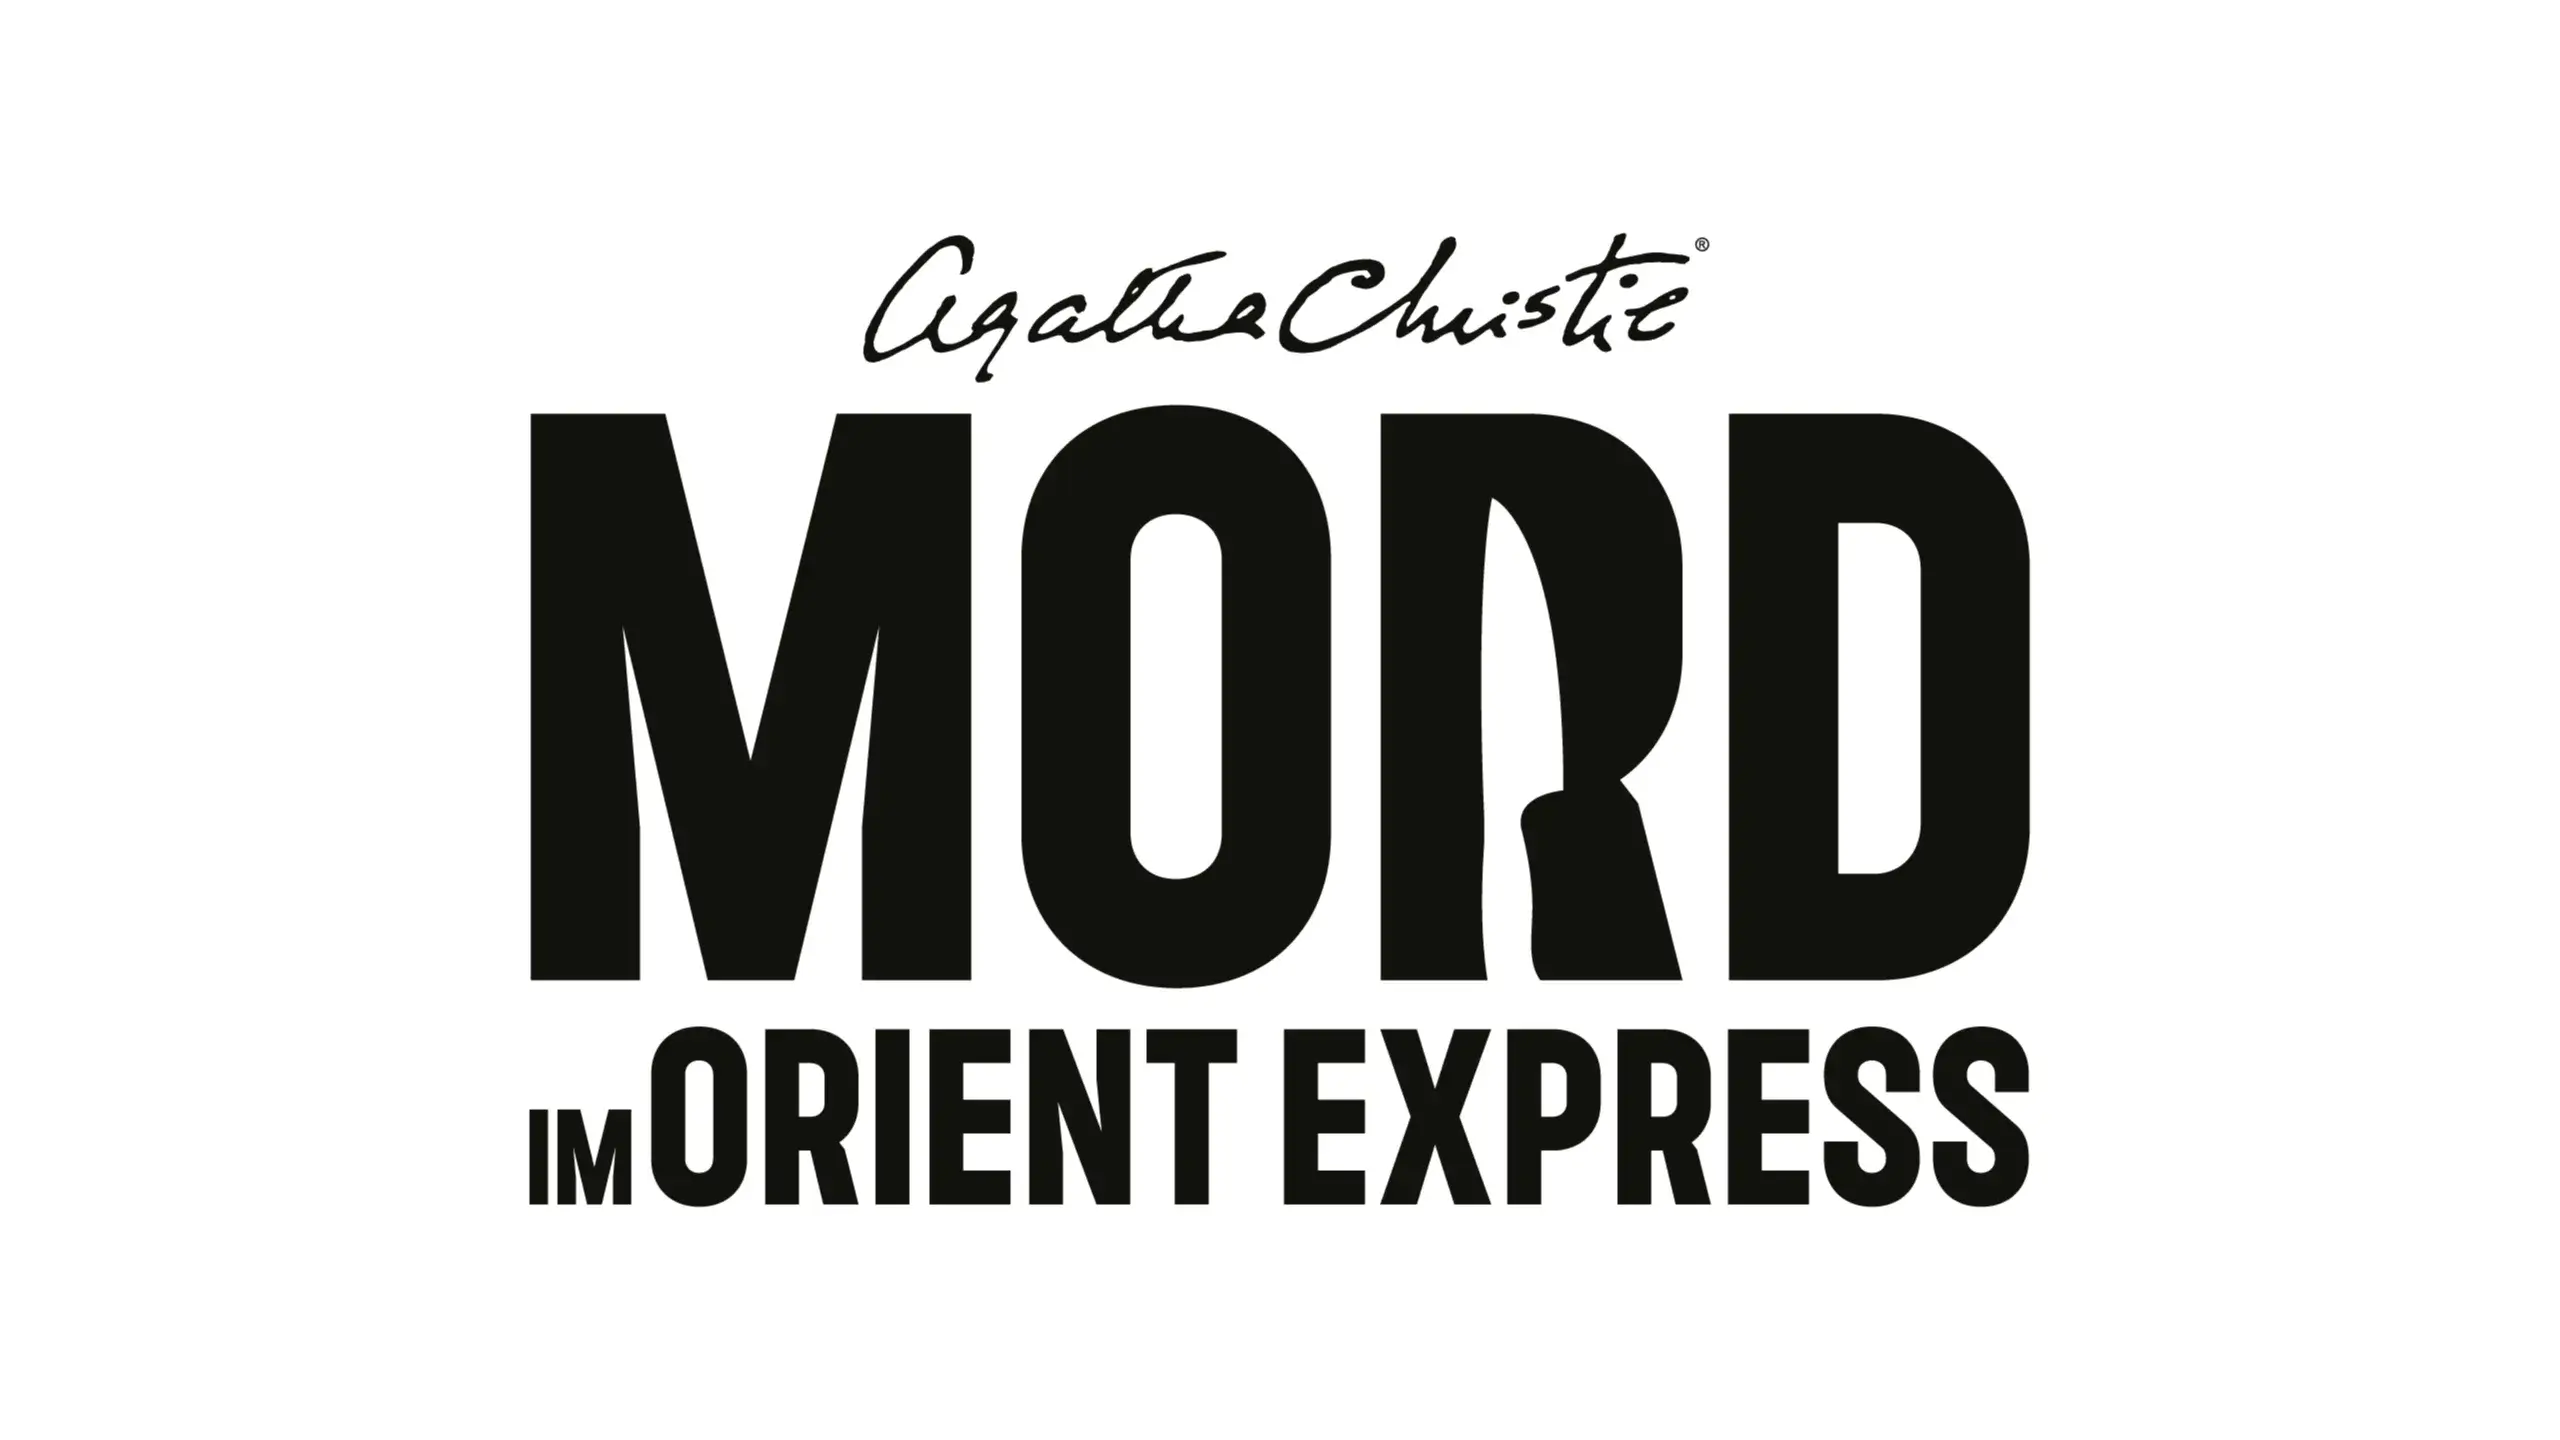 Agatha Christie und - Mord Release-Datum Orient Inhalte – Spielemagazin Express: im Deluxe TestingBuddies der - Detektiv-Abenteuer unabhängiges Dein Edition zum angekündigt